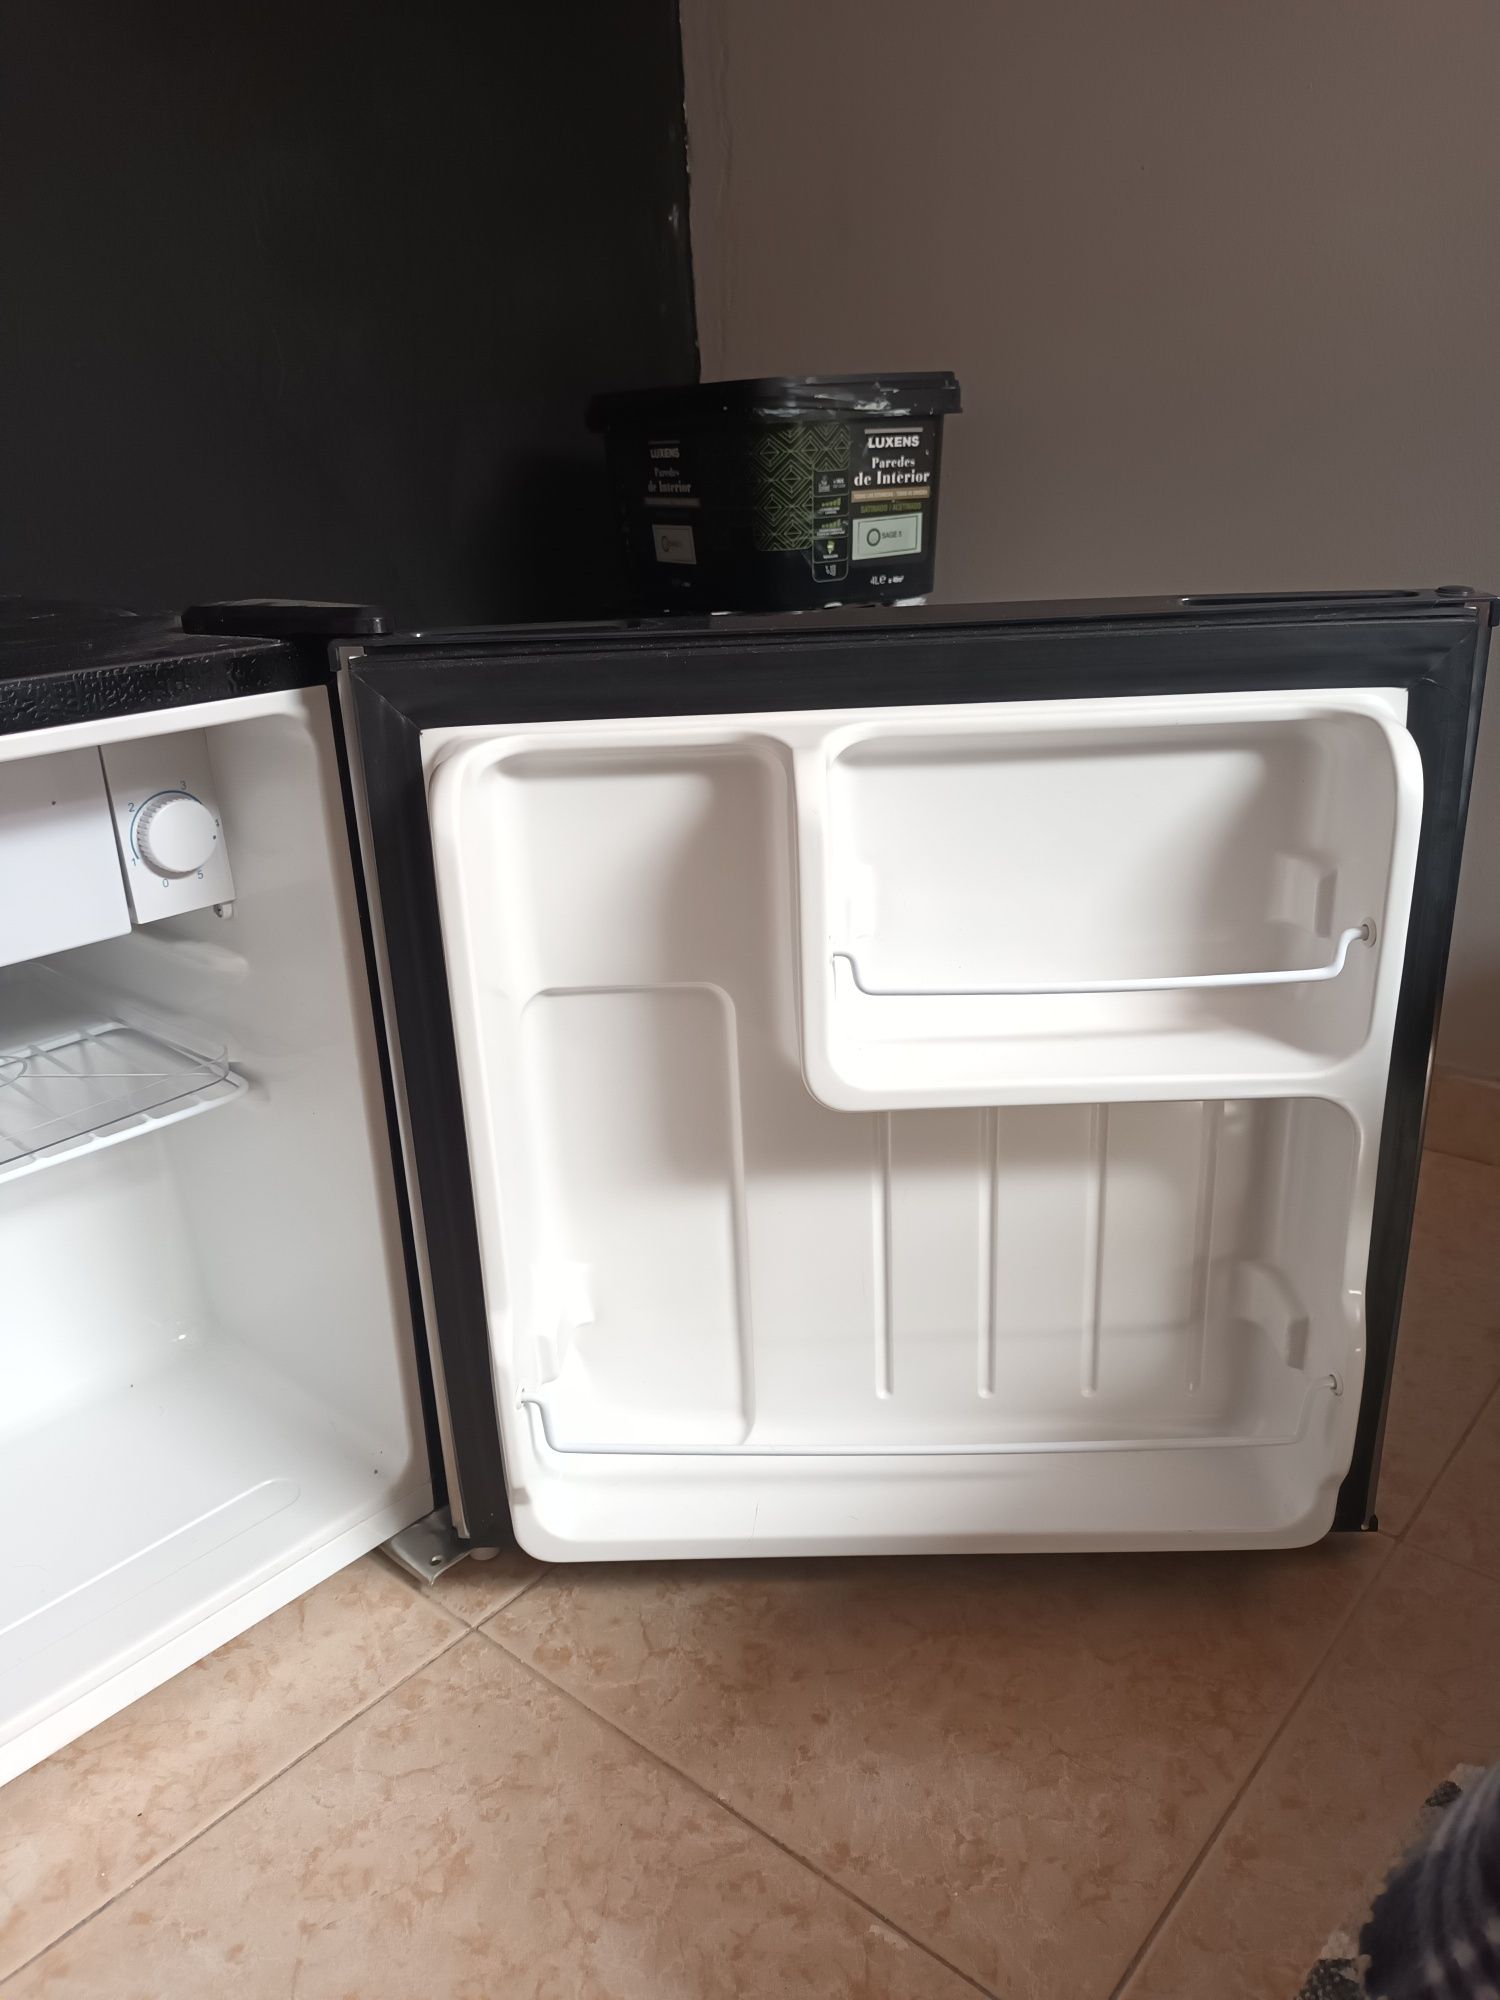 Minibar frigorífico cecotec